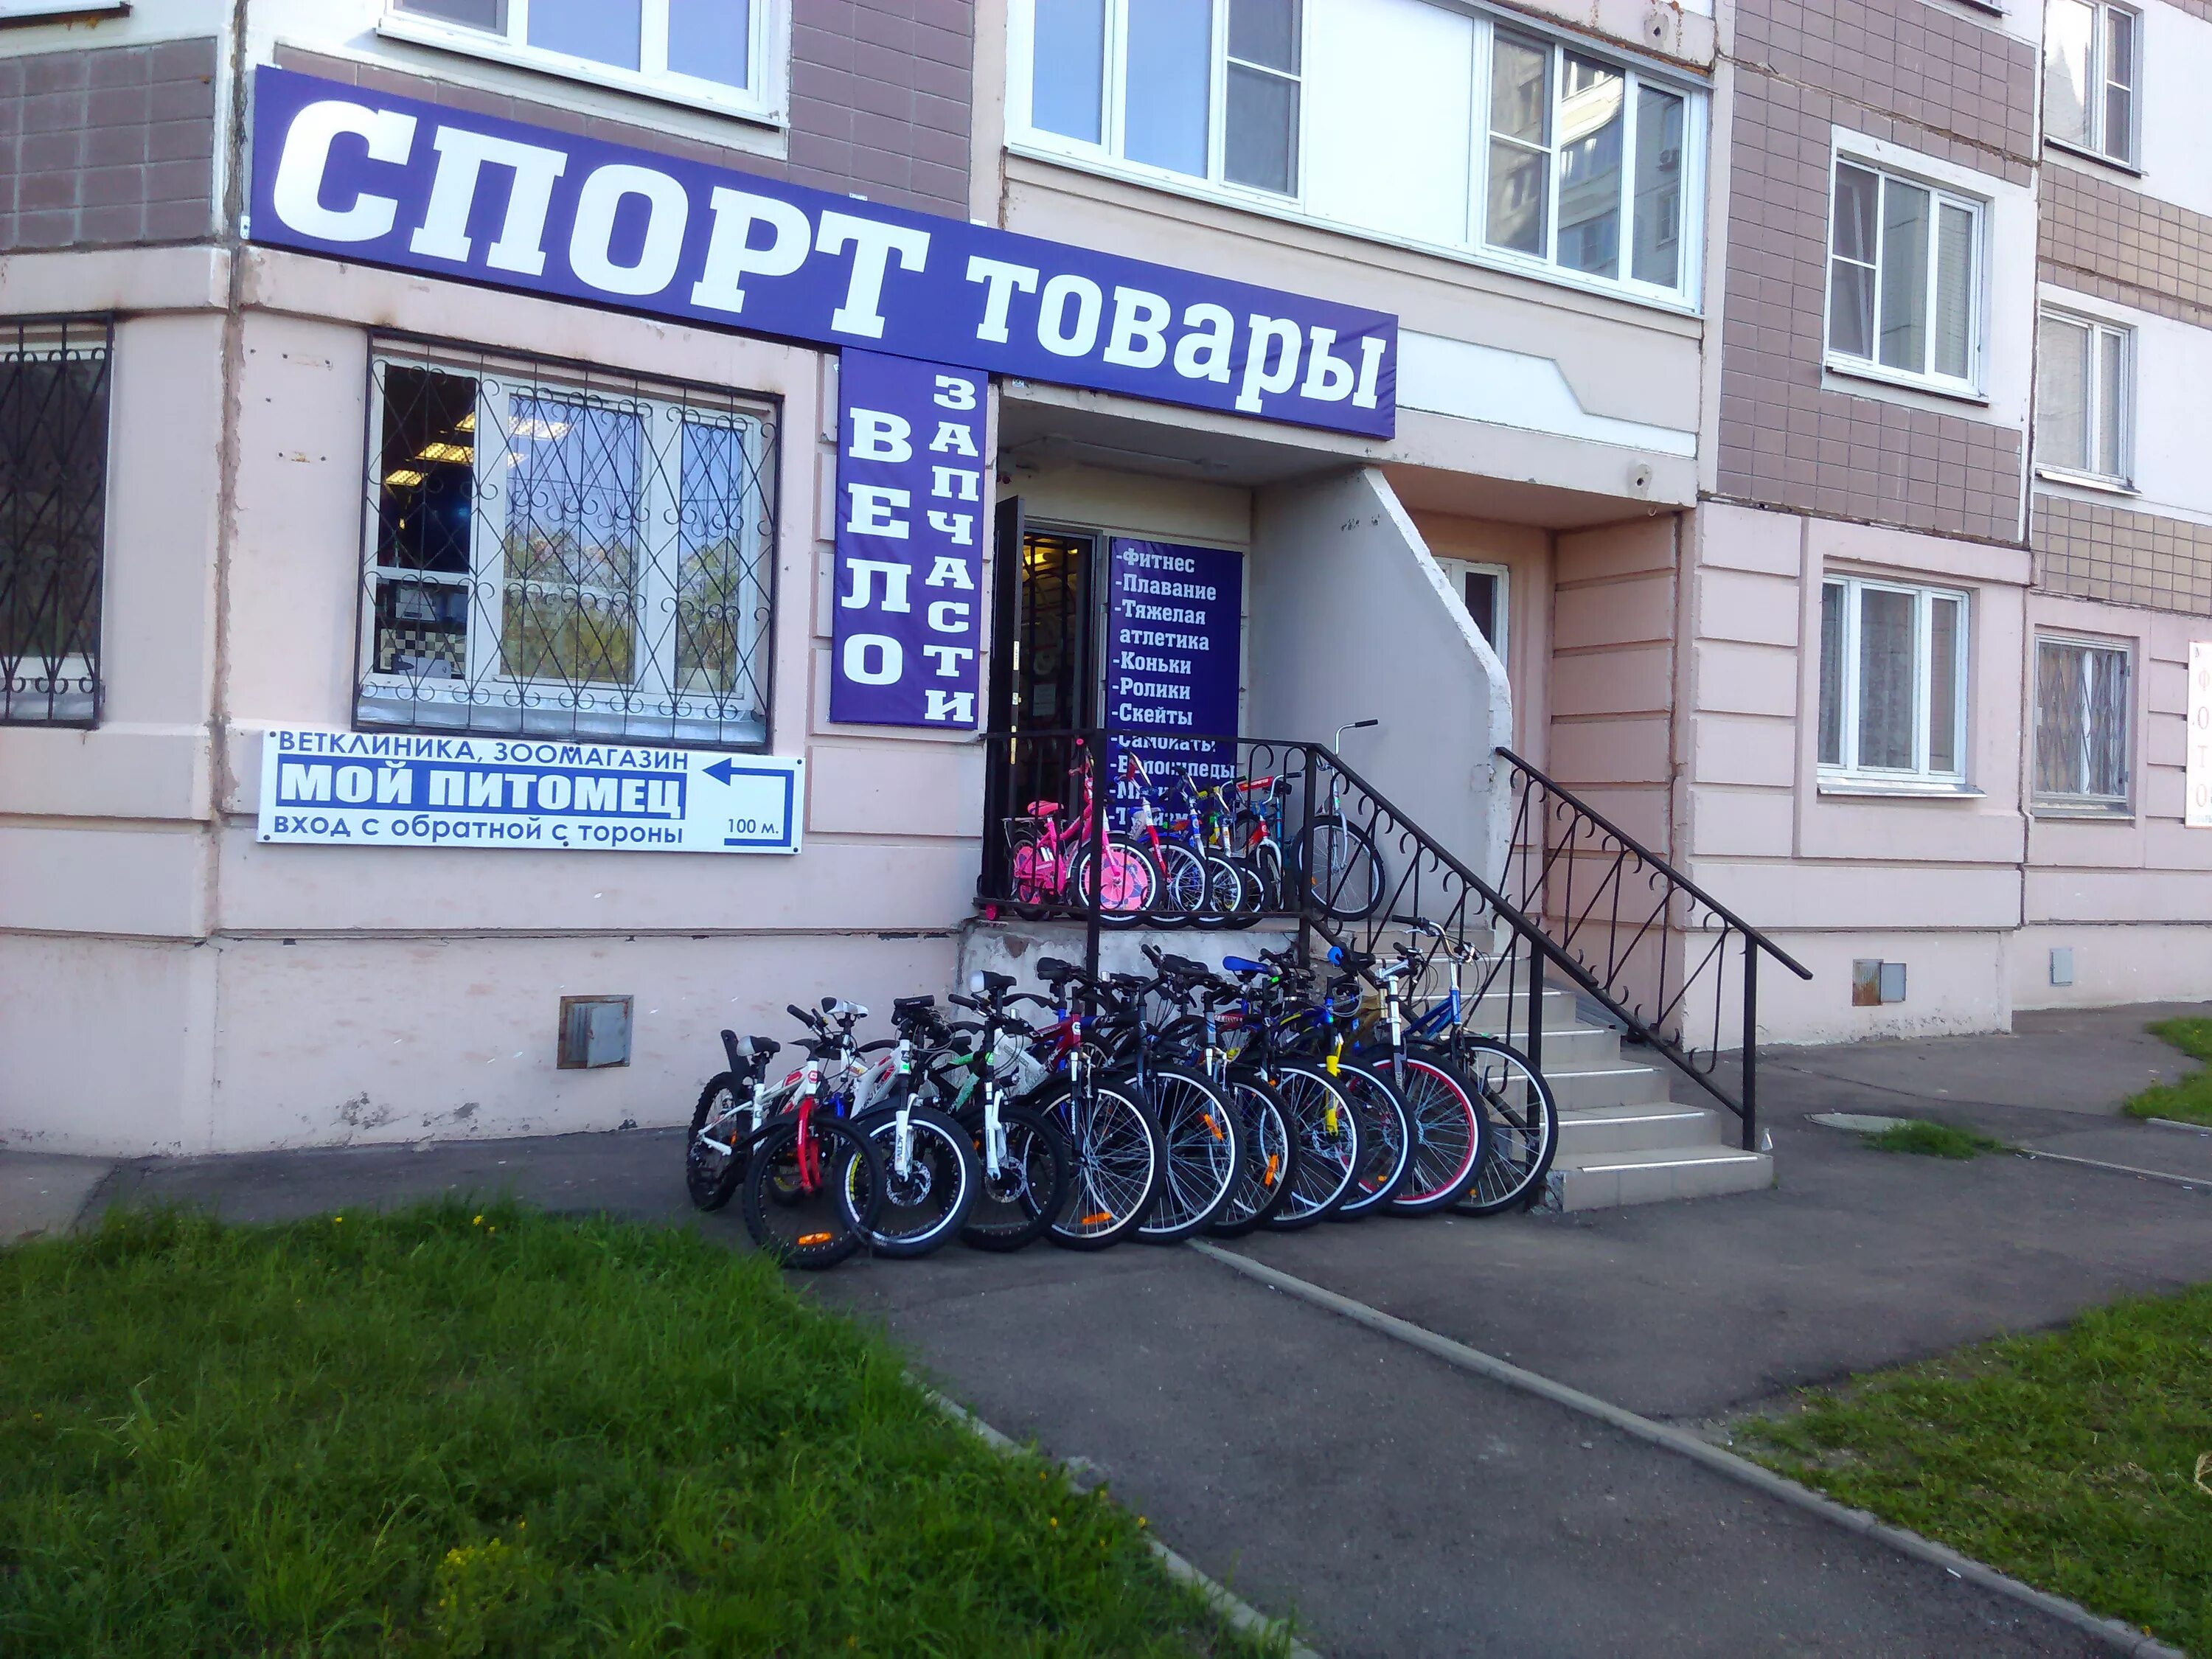 Ремонт велосипедов в москве рядом со мной. Спорттовары вывеска. Магазин велосипедов. Веломагазин запчасти. Велосипеды магазин спортивный.